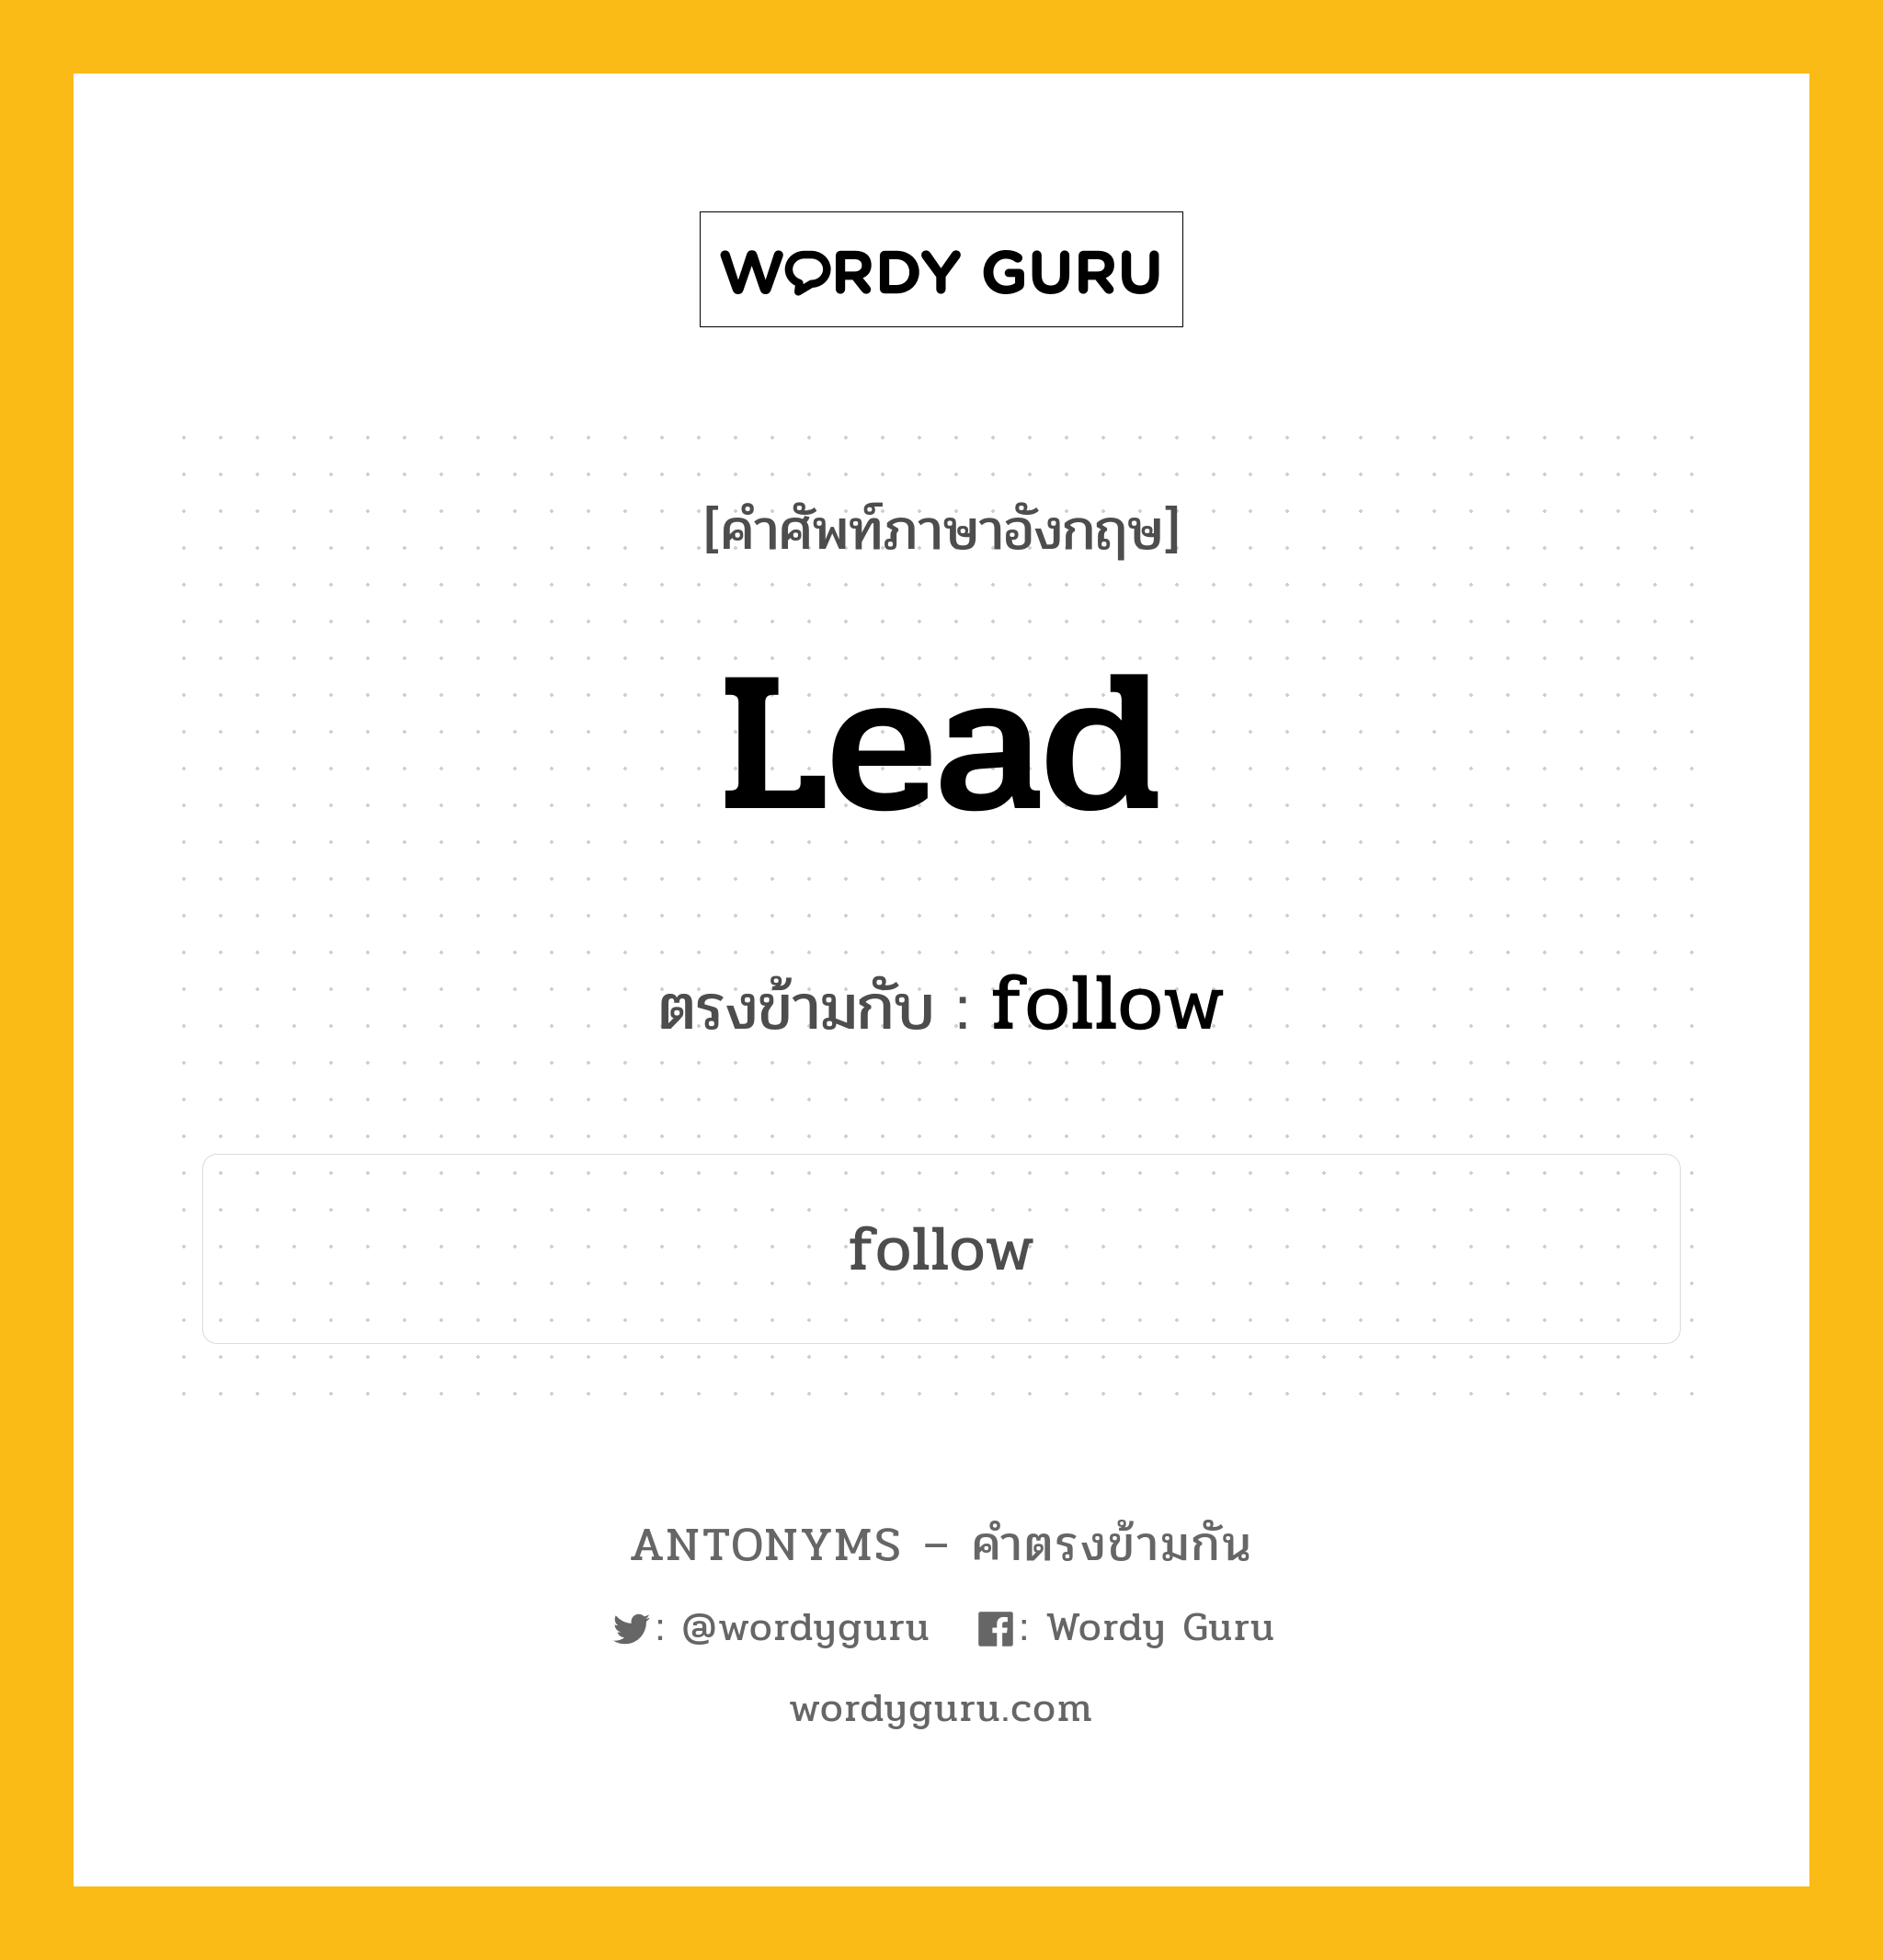 lead เป็นคำตรงข้ามกับคำไหนบ้าง?, คำศัพท์ภาษาอังกฤษที่มีความหมายตรงข้ามกัน lead ตรงข้ามกับ follow หมวด follow